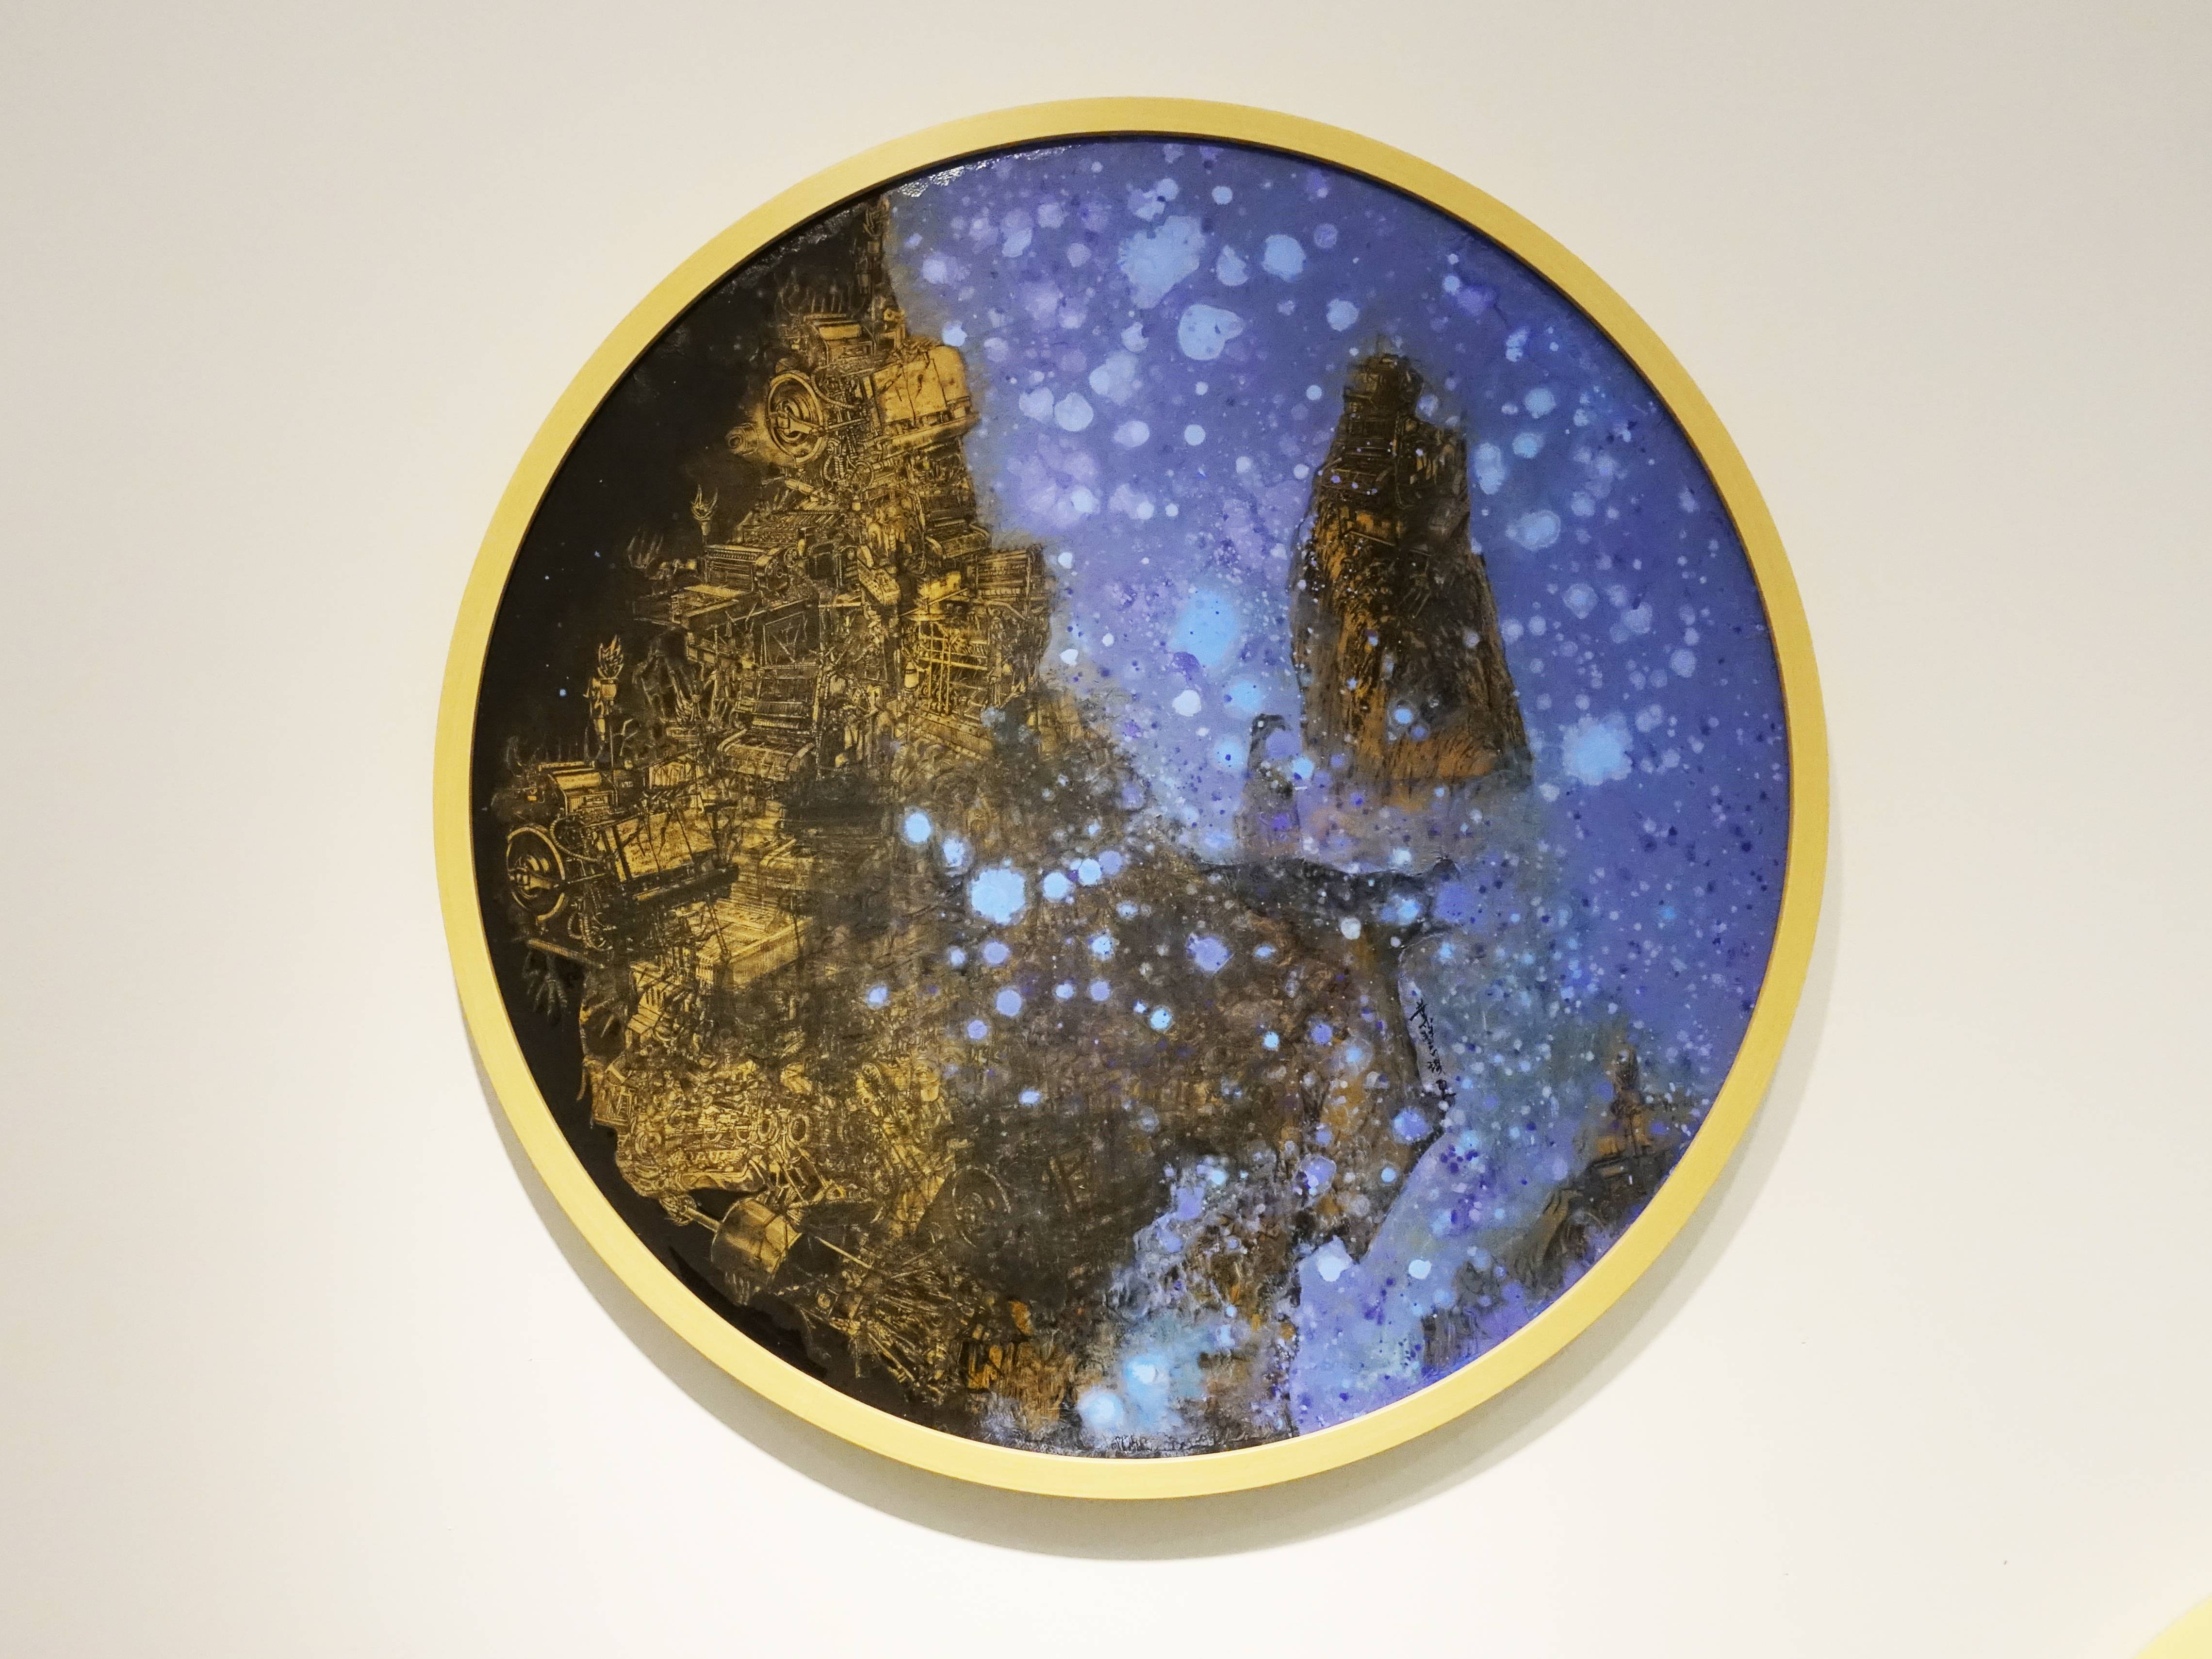  葉慧琪，《星夜》，60 x 60 cm，綜合媒材、絹布。